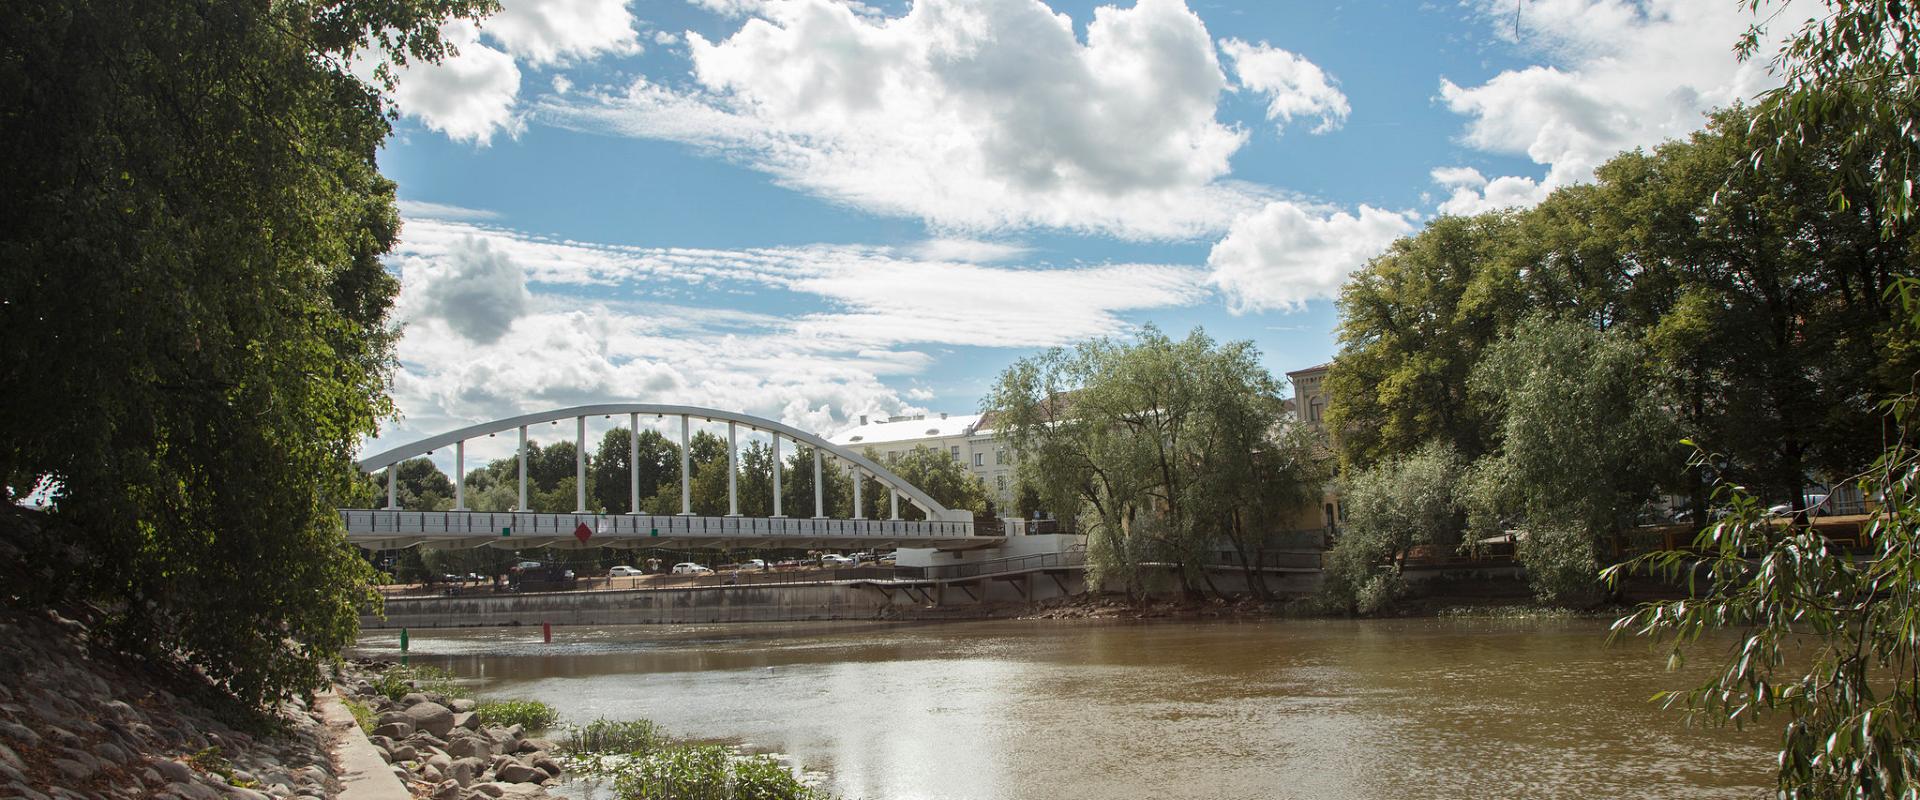 Die Bogenbrücke, das sommerliche Tartu und weiße Wolken in einem hellblauen Himmel